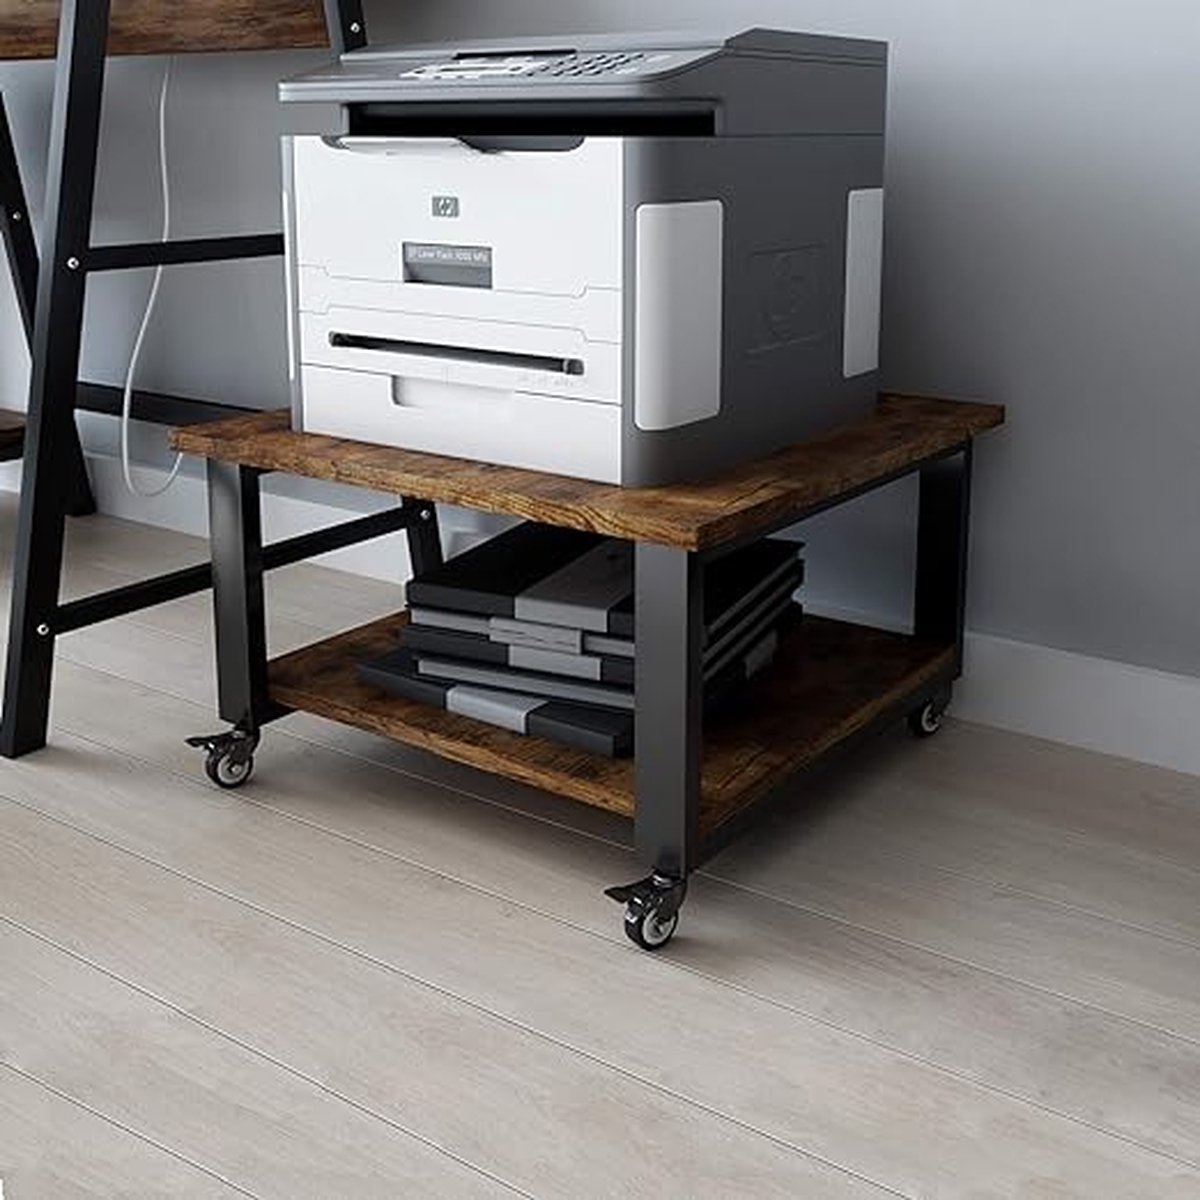 2-Tier Laser Printer Stand 50 * 50 * 30cm Grote Printer Tafel Copier Stand onder Bureau Heavy Duty Rolling Cart met Paper Storage Shelf Printer Houder op Wielen voor Home Office (Retro)